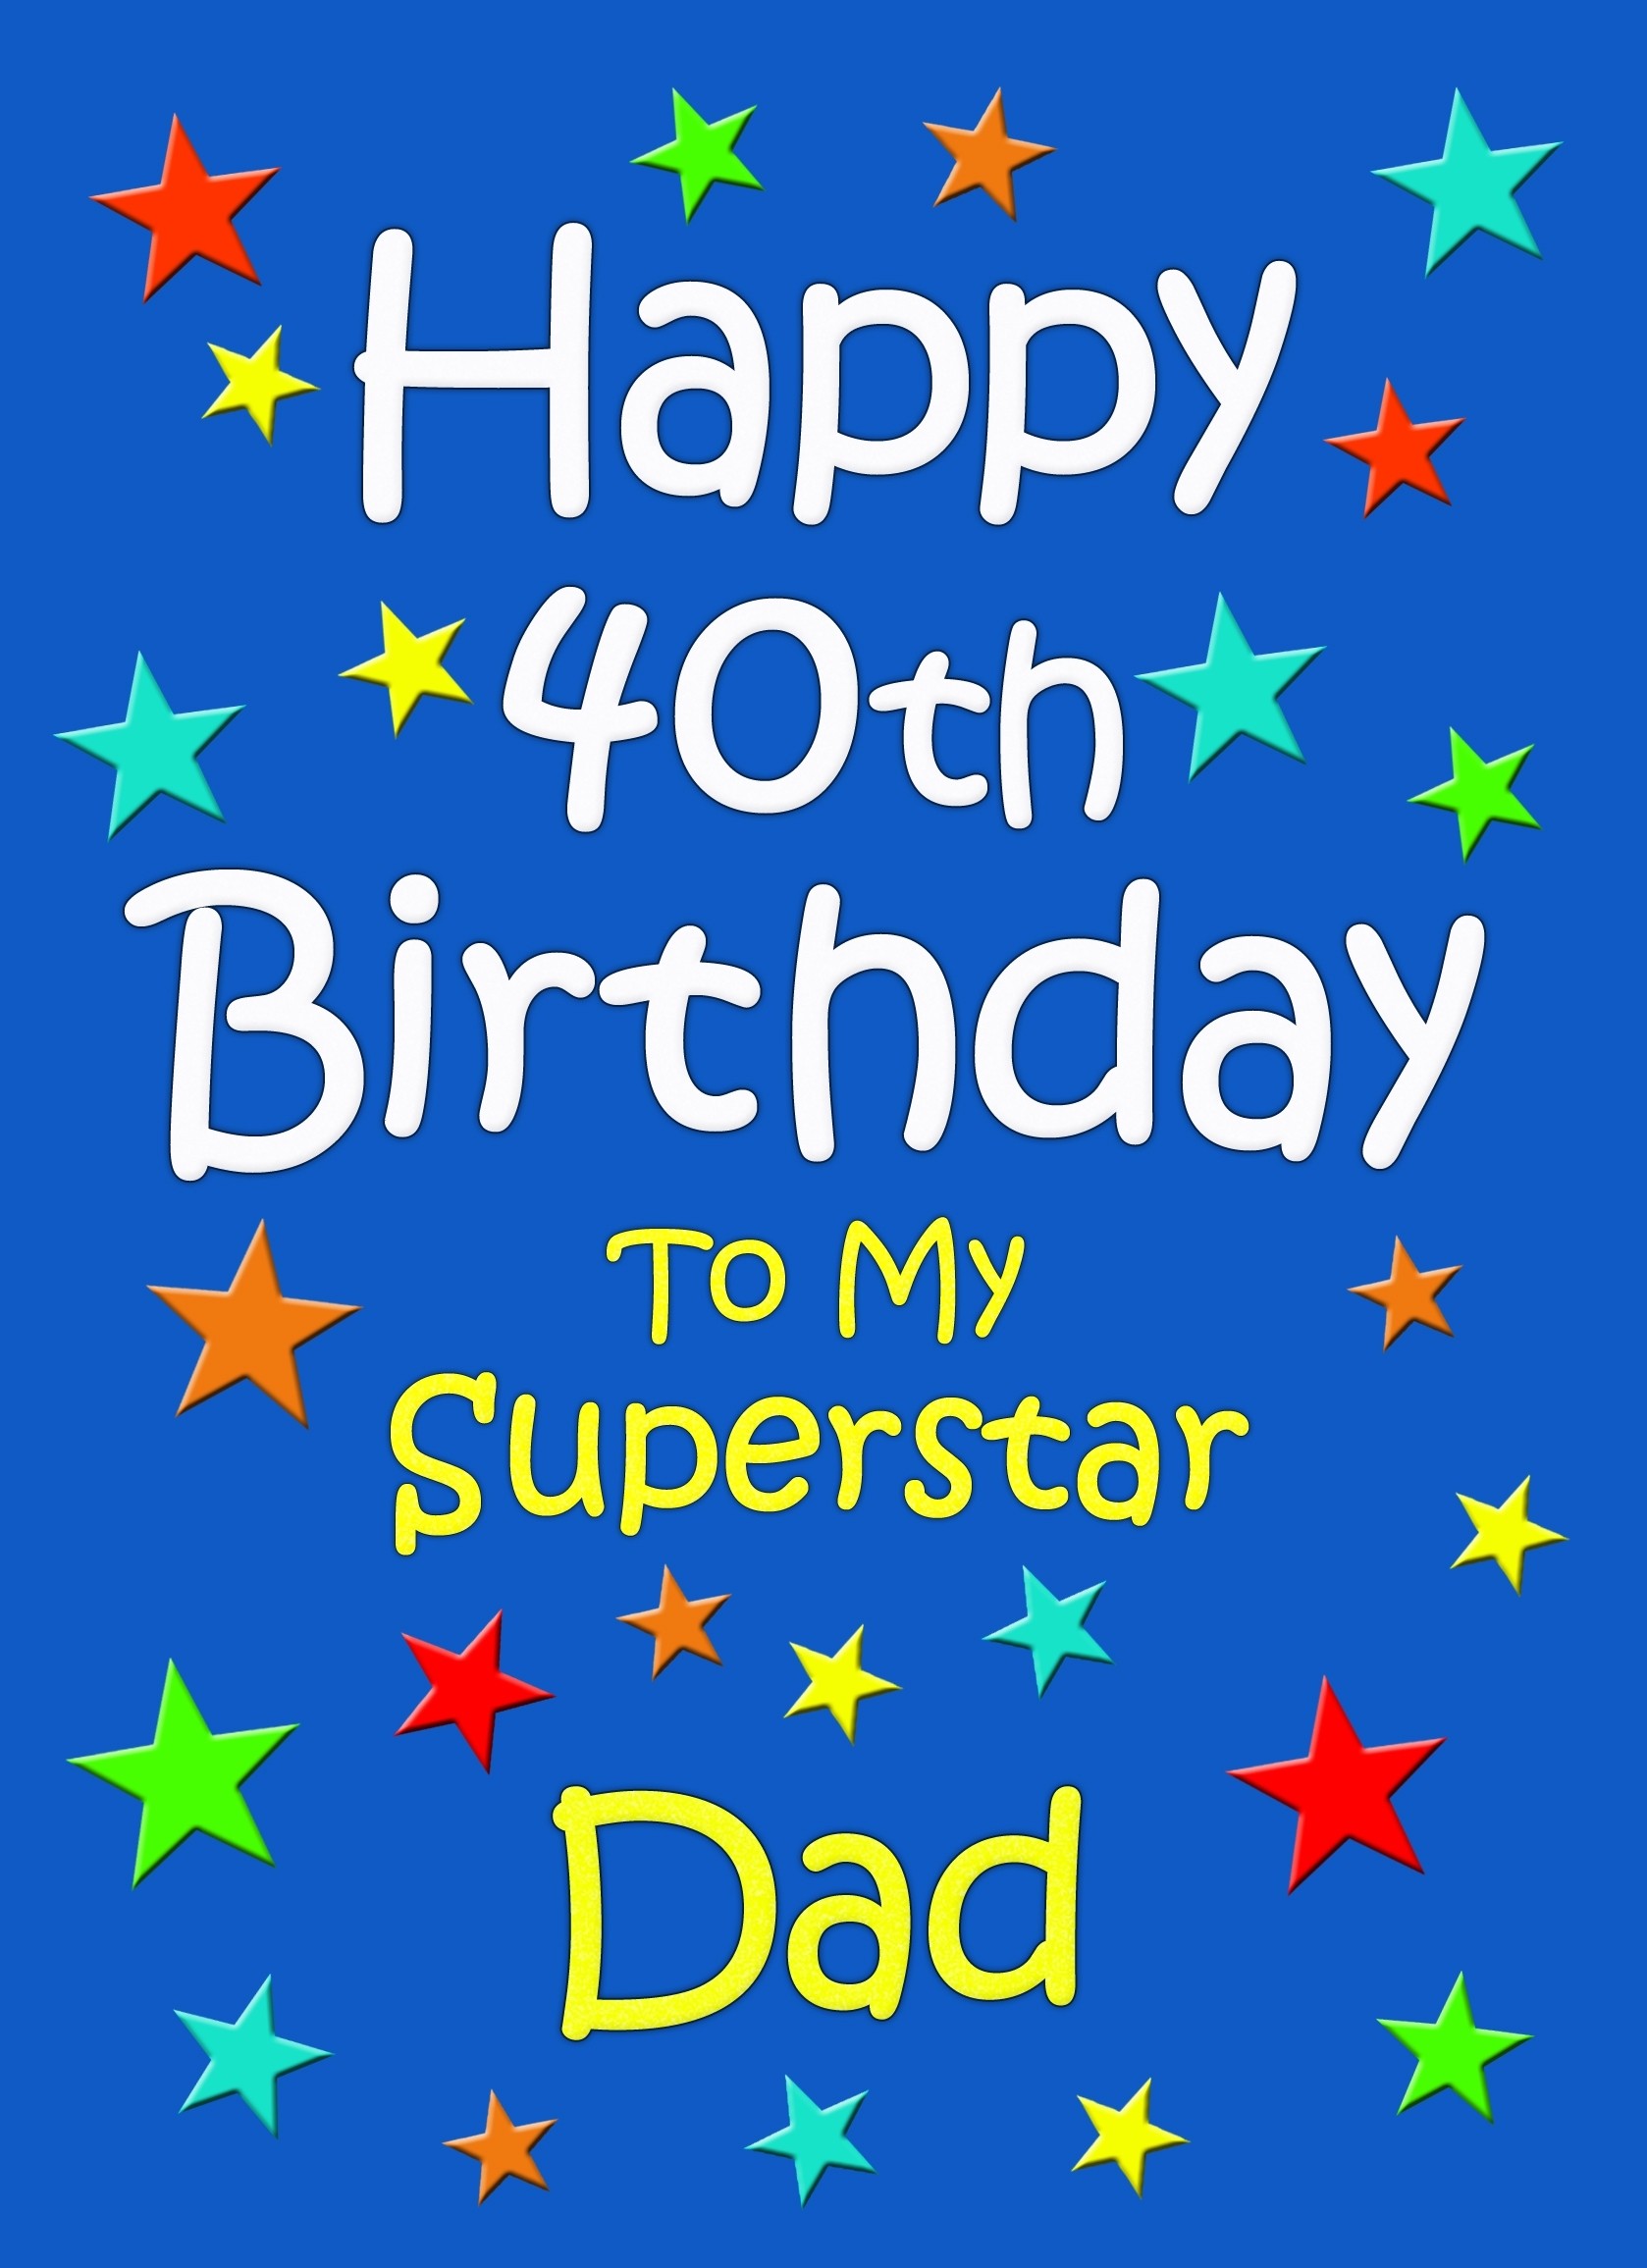 Dad 40th Birthday Card (Blue)